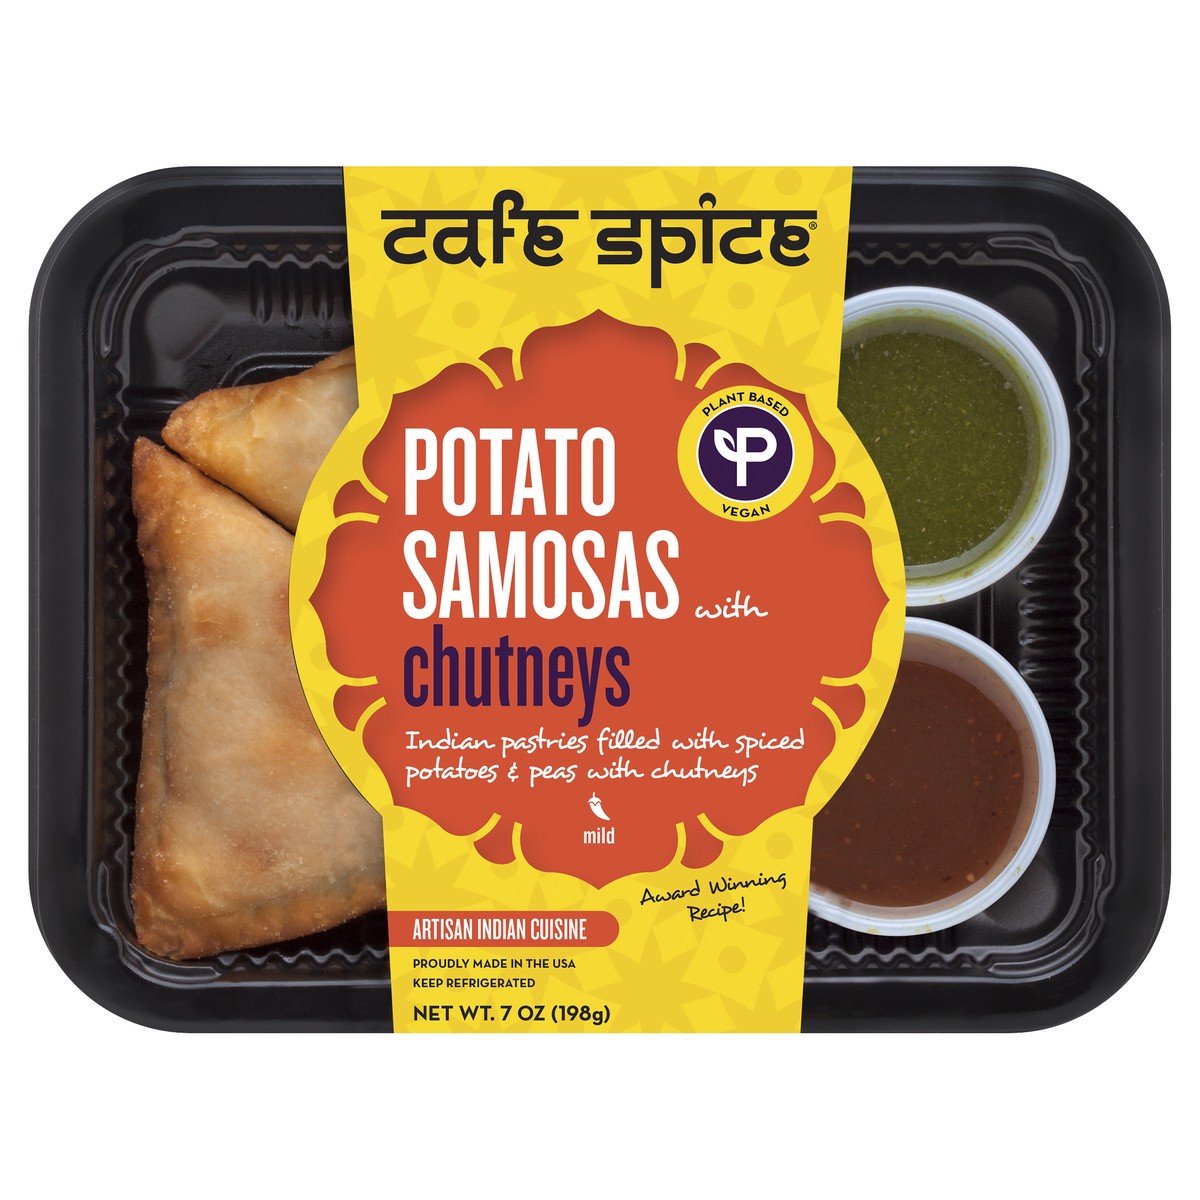 slide 1 of 7, Café Spice Cafe Spice Potato Samosas, 16 oz